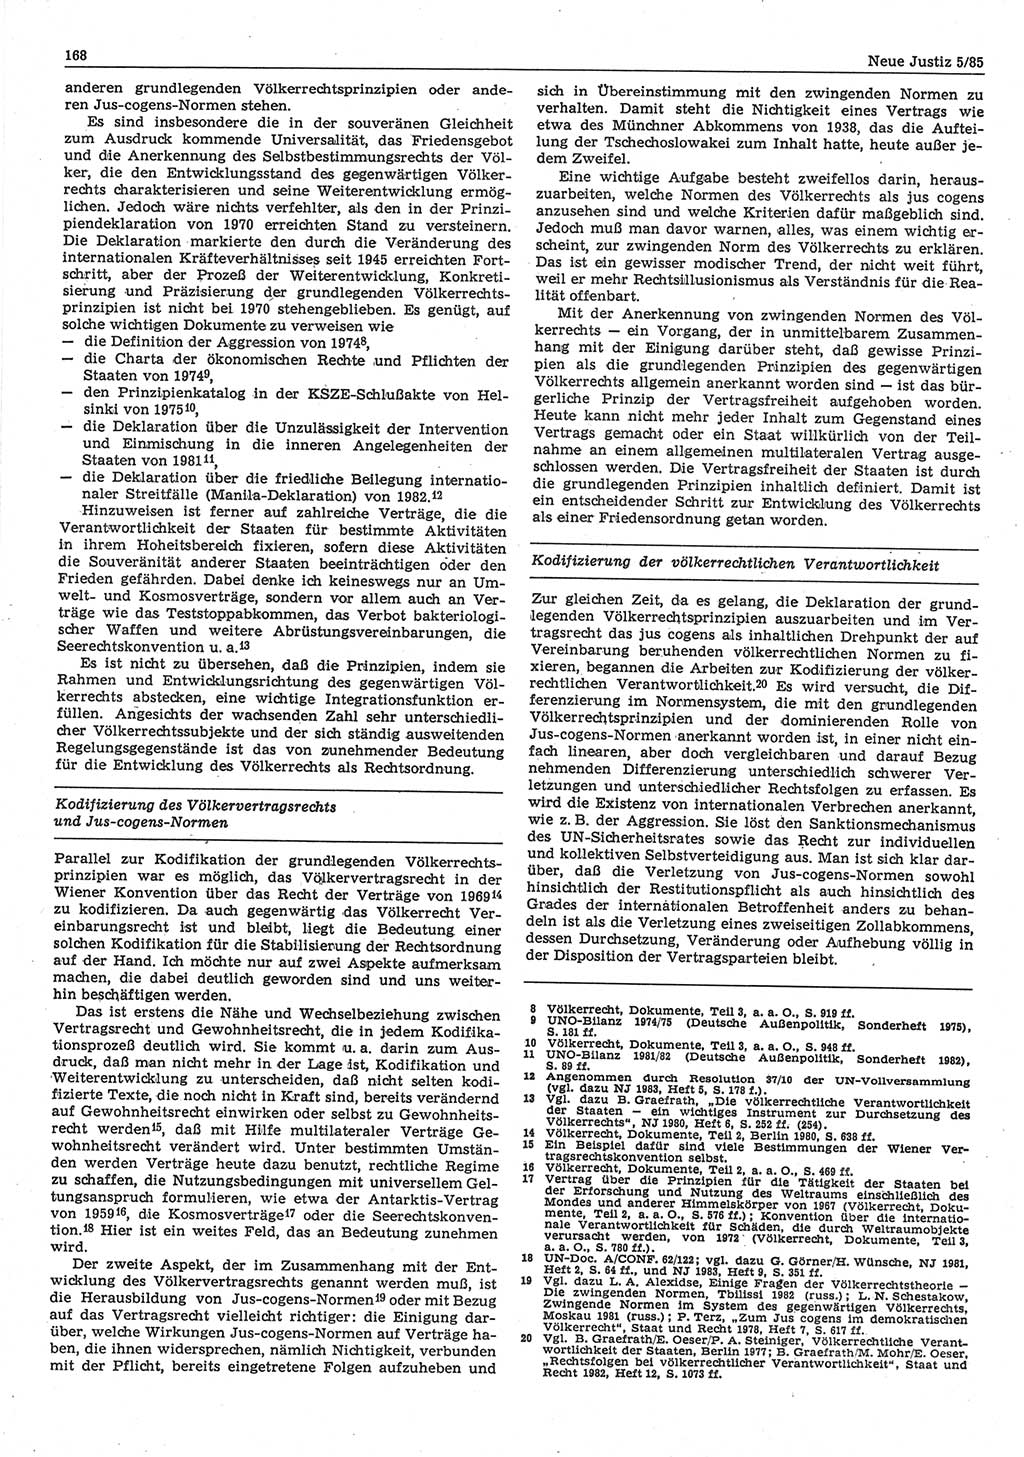 Neue Justiz (NJ), Zeitschrift für sozialistisches Recht und Gesetzlichkeit [Deutsche Demokratische Republik (DDR)], 39. Jahrgang 1985, Seite 168 (NJ DDR 1985, S. 168)